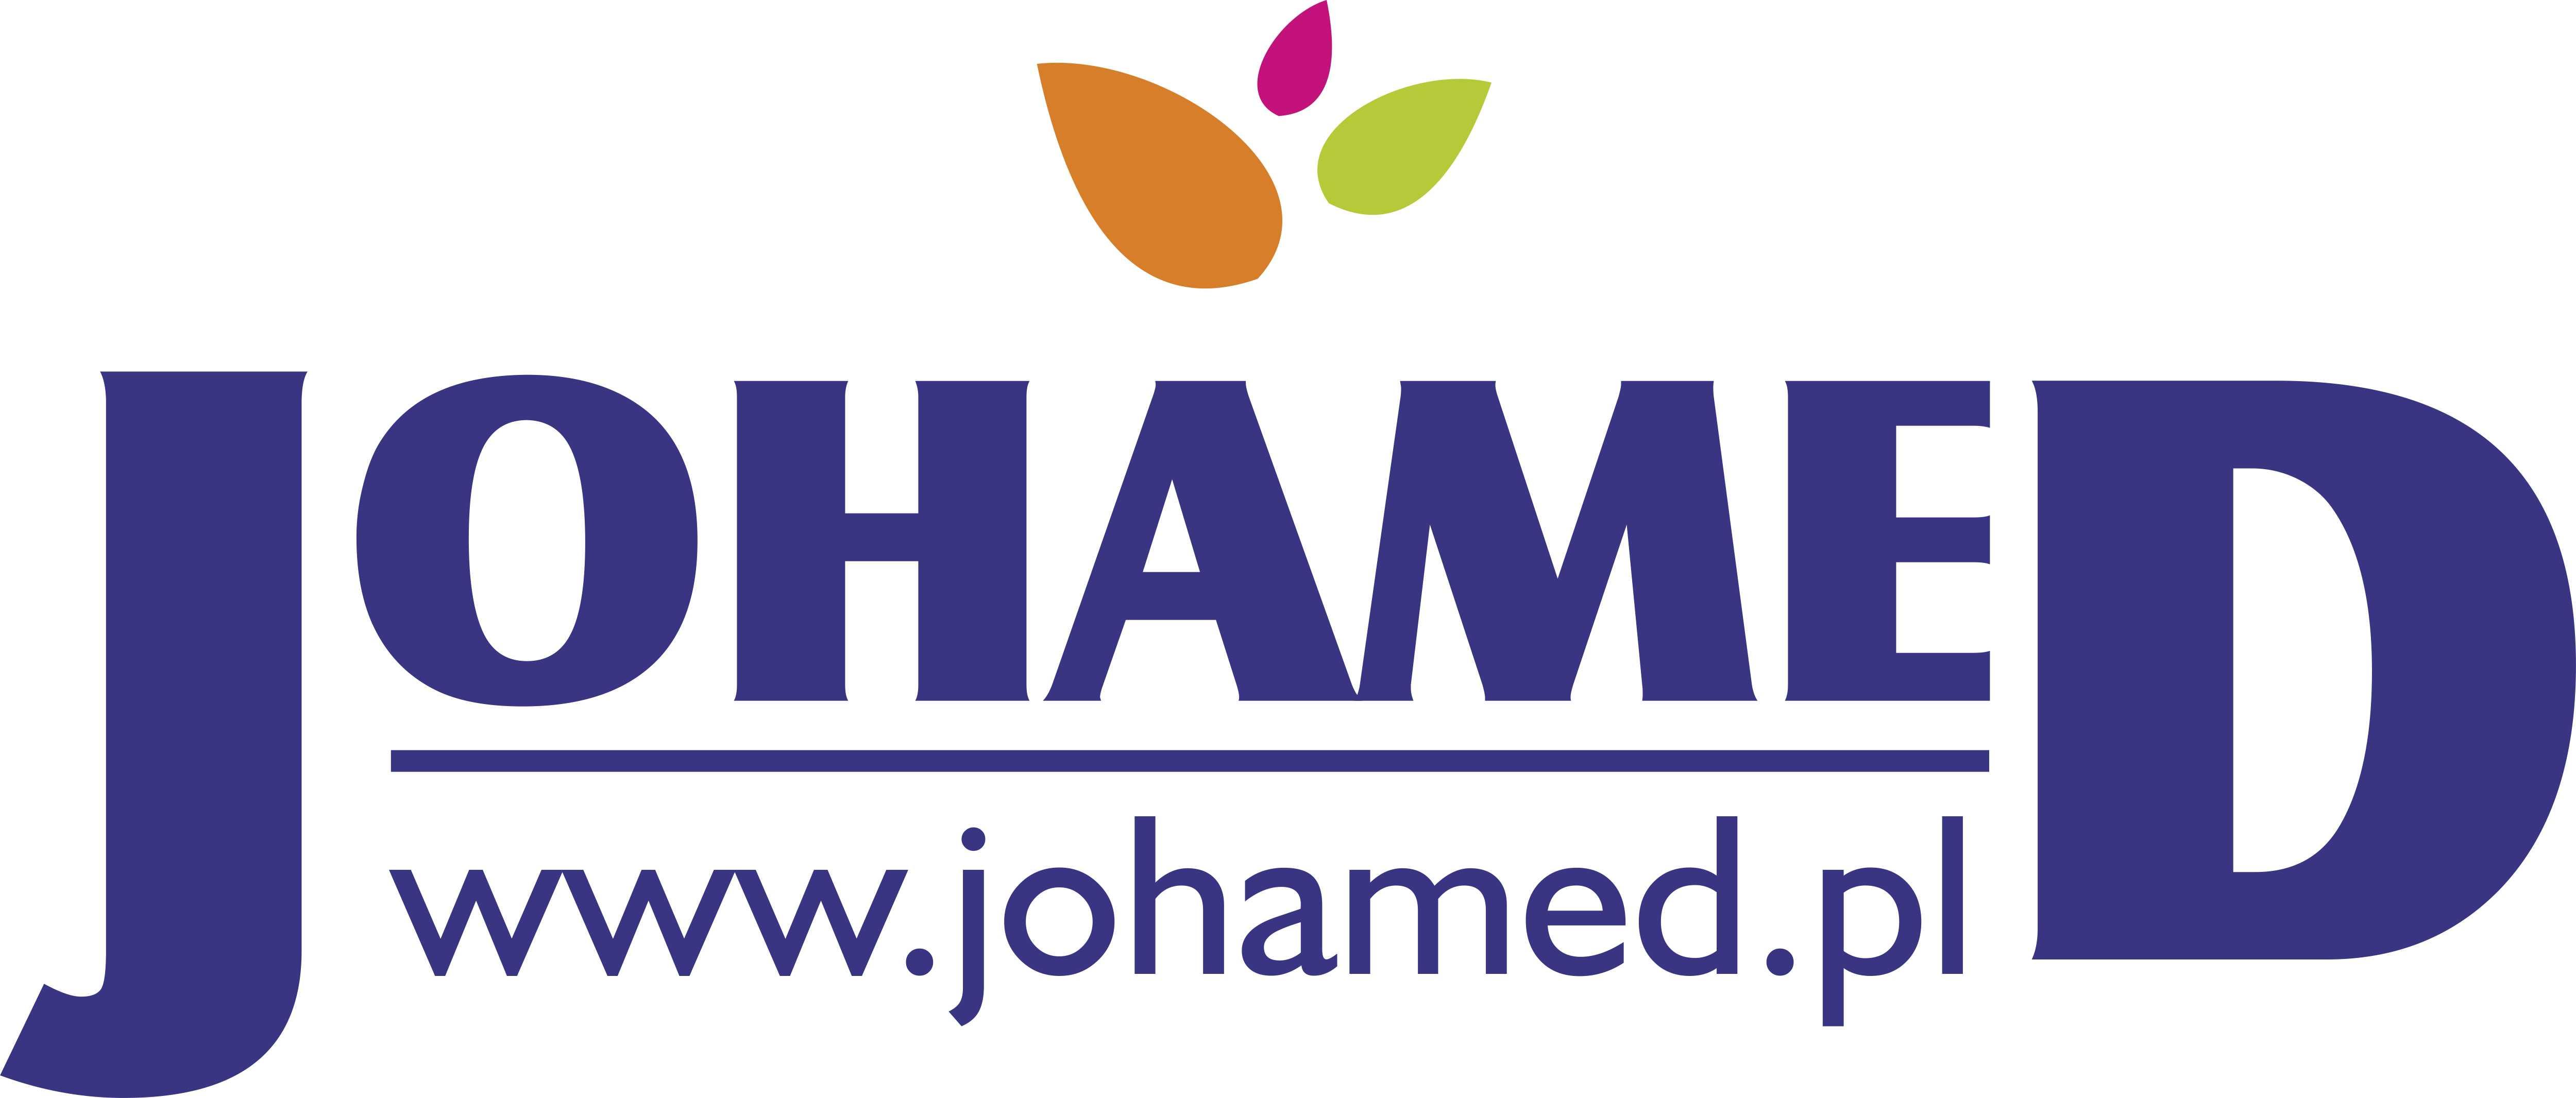 Johamed logo